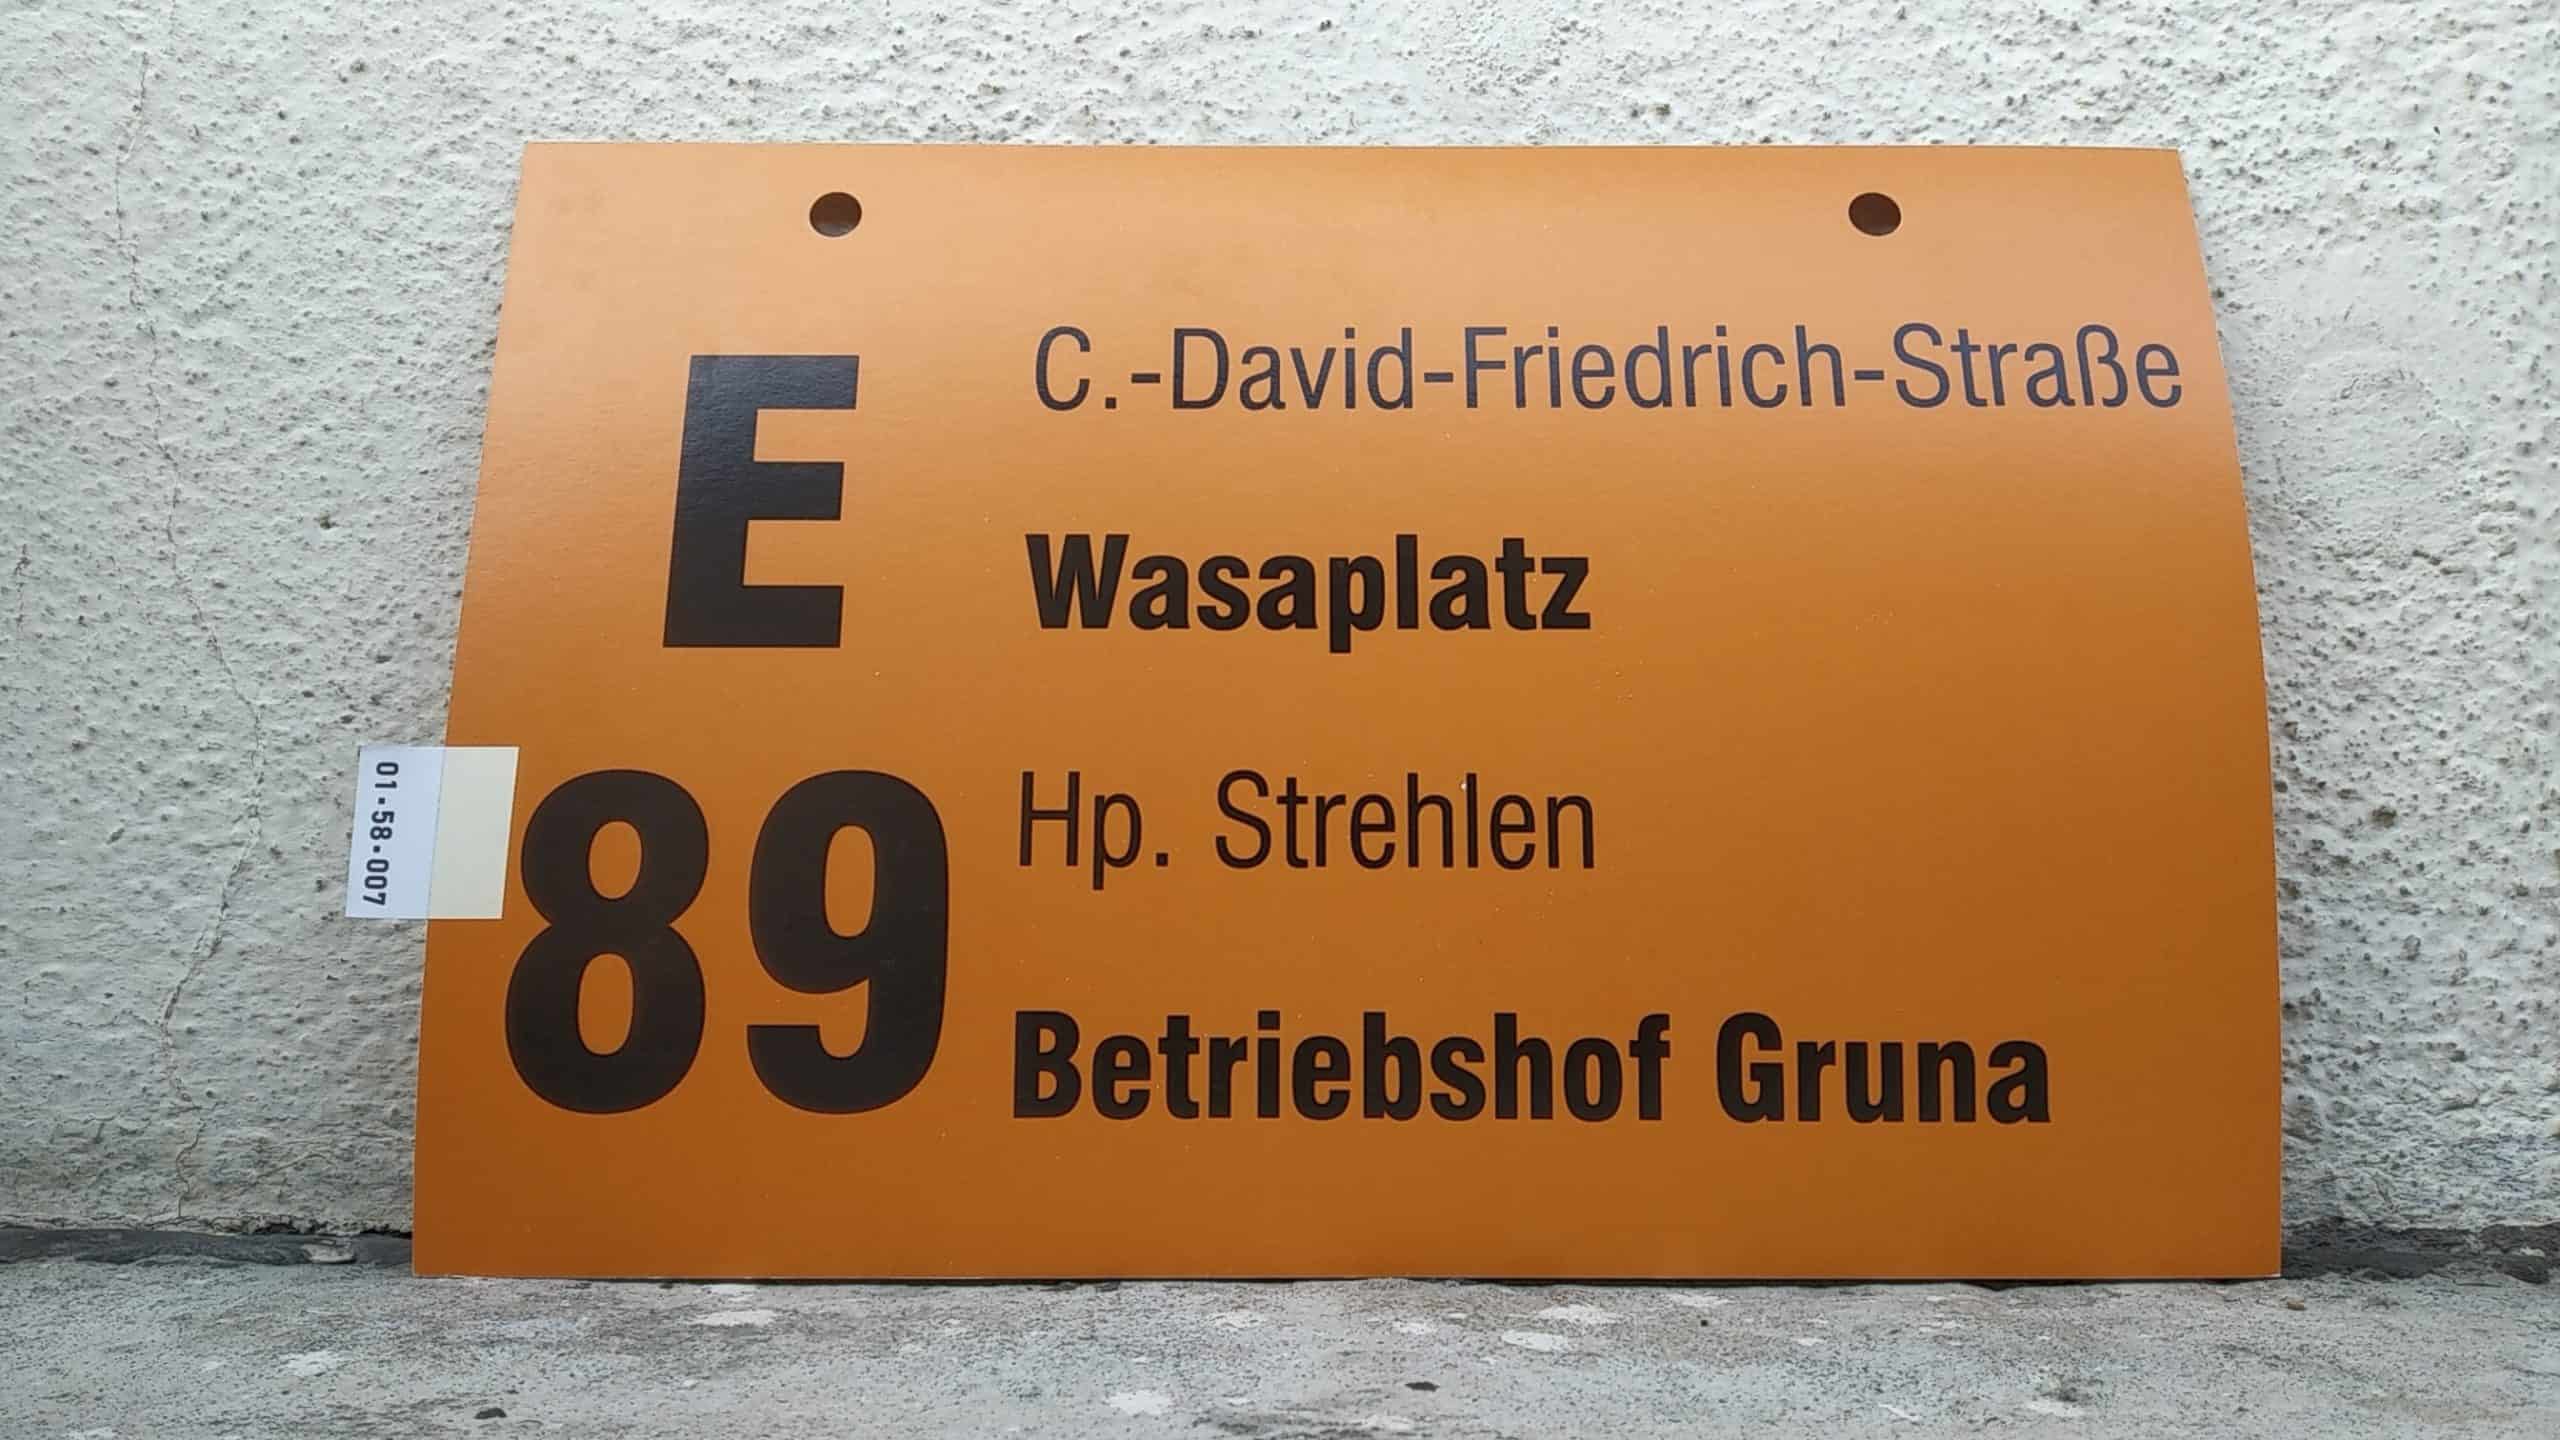 Ein seltenes Bus-Linienschild aus Dresden der Linie E 89 von Wasaplatz nach Betriebshof Gruna